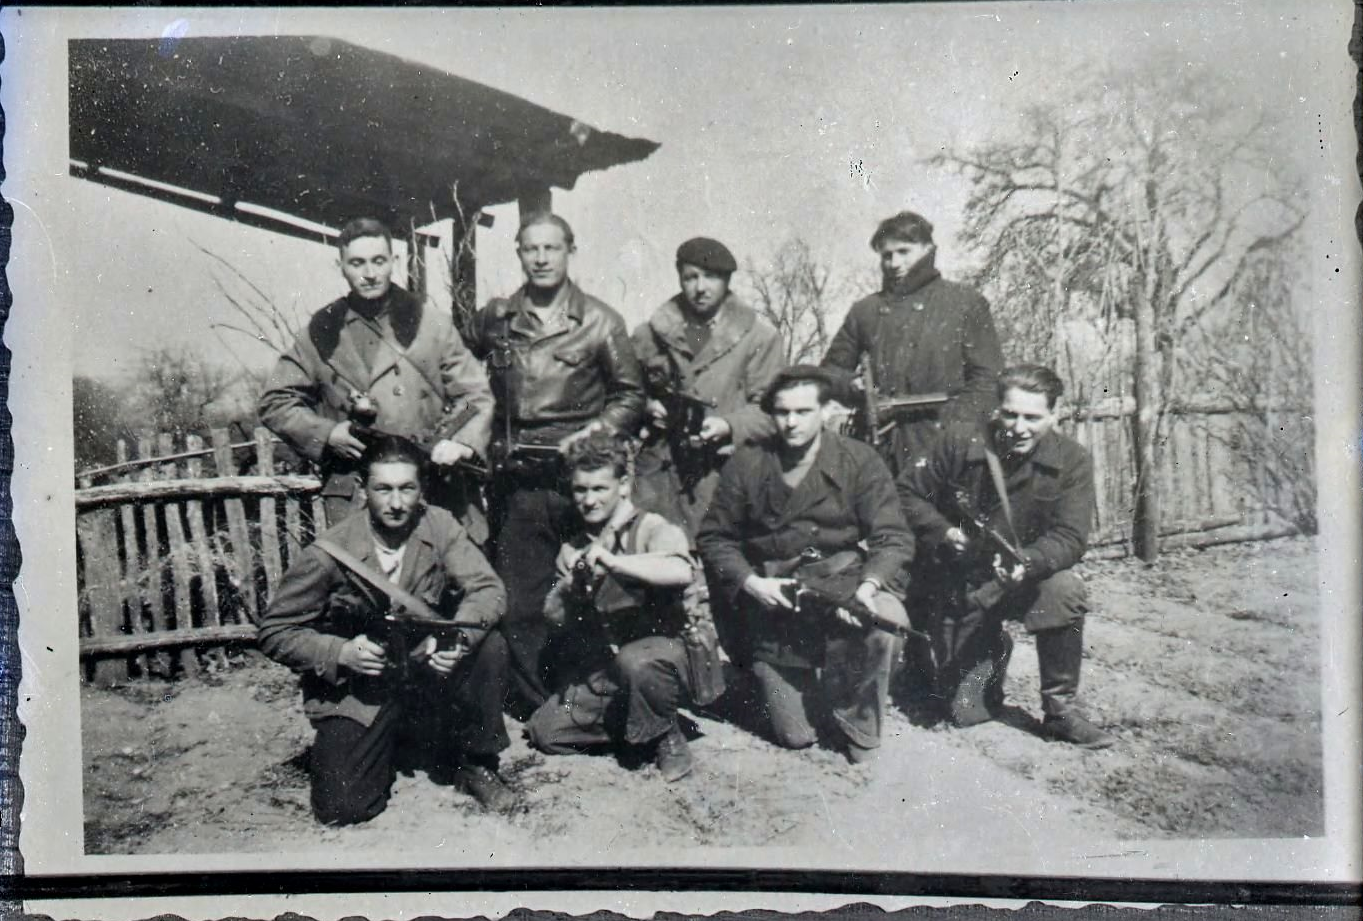 Photographie noir et blnac : un groupe de 8 jeunes hommes armés pose devant l'appareil ; derrière eux une haie et un arbre